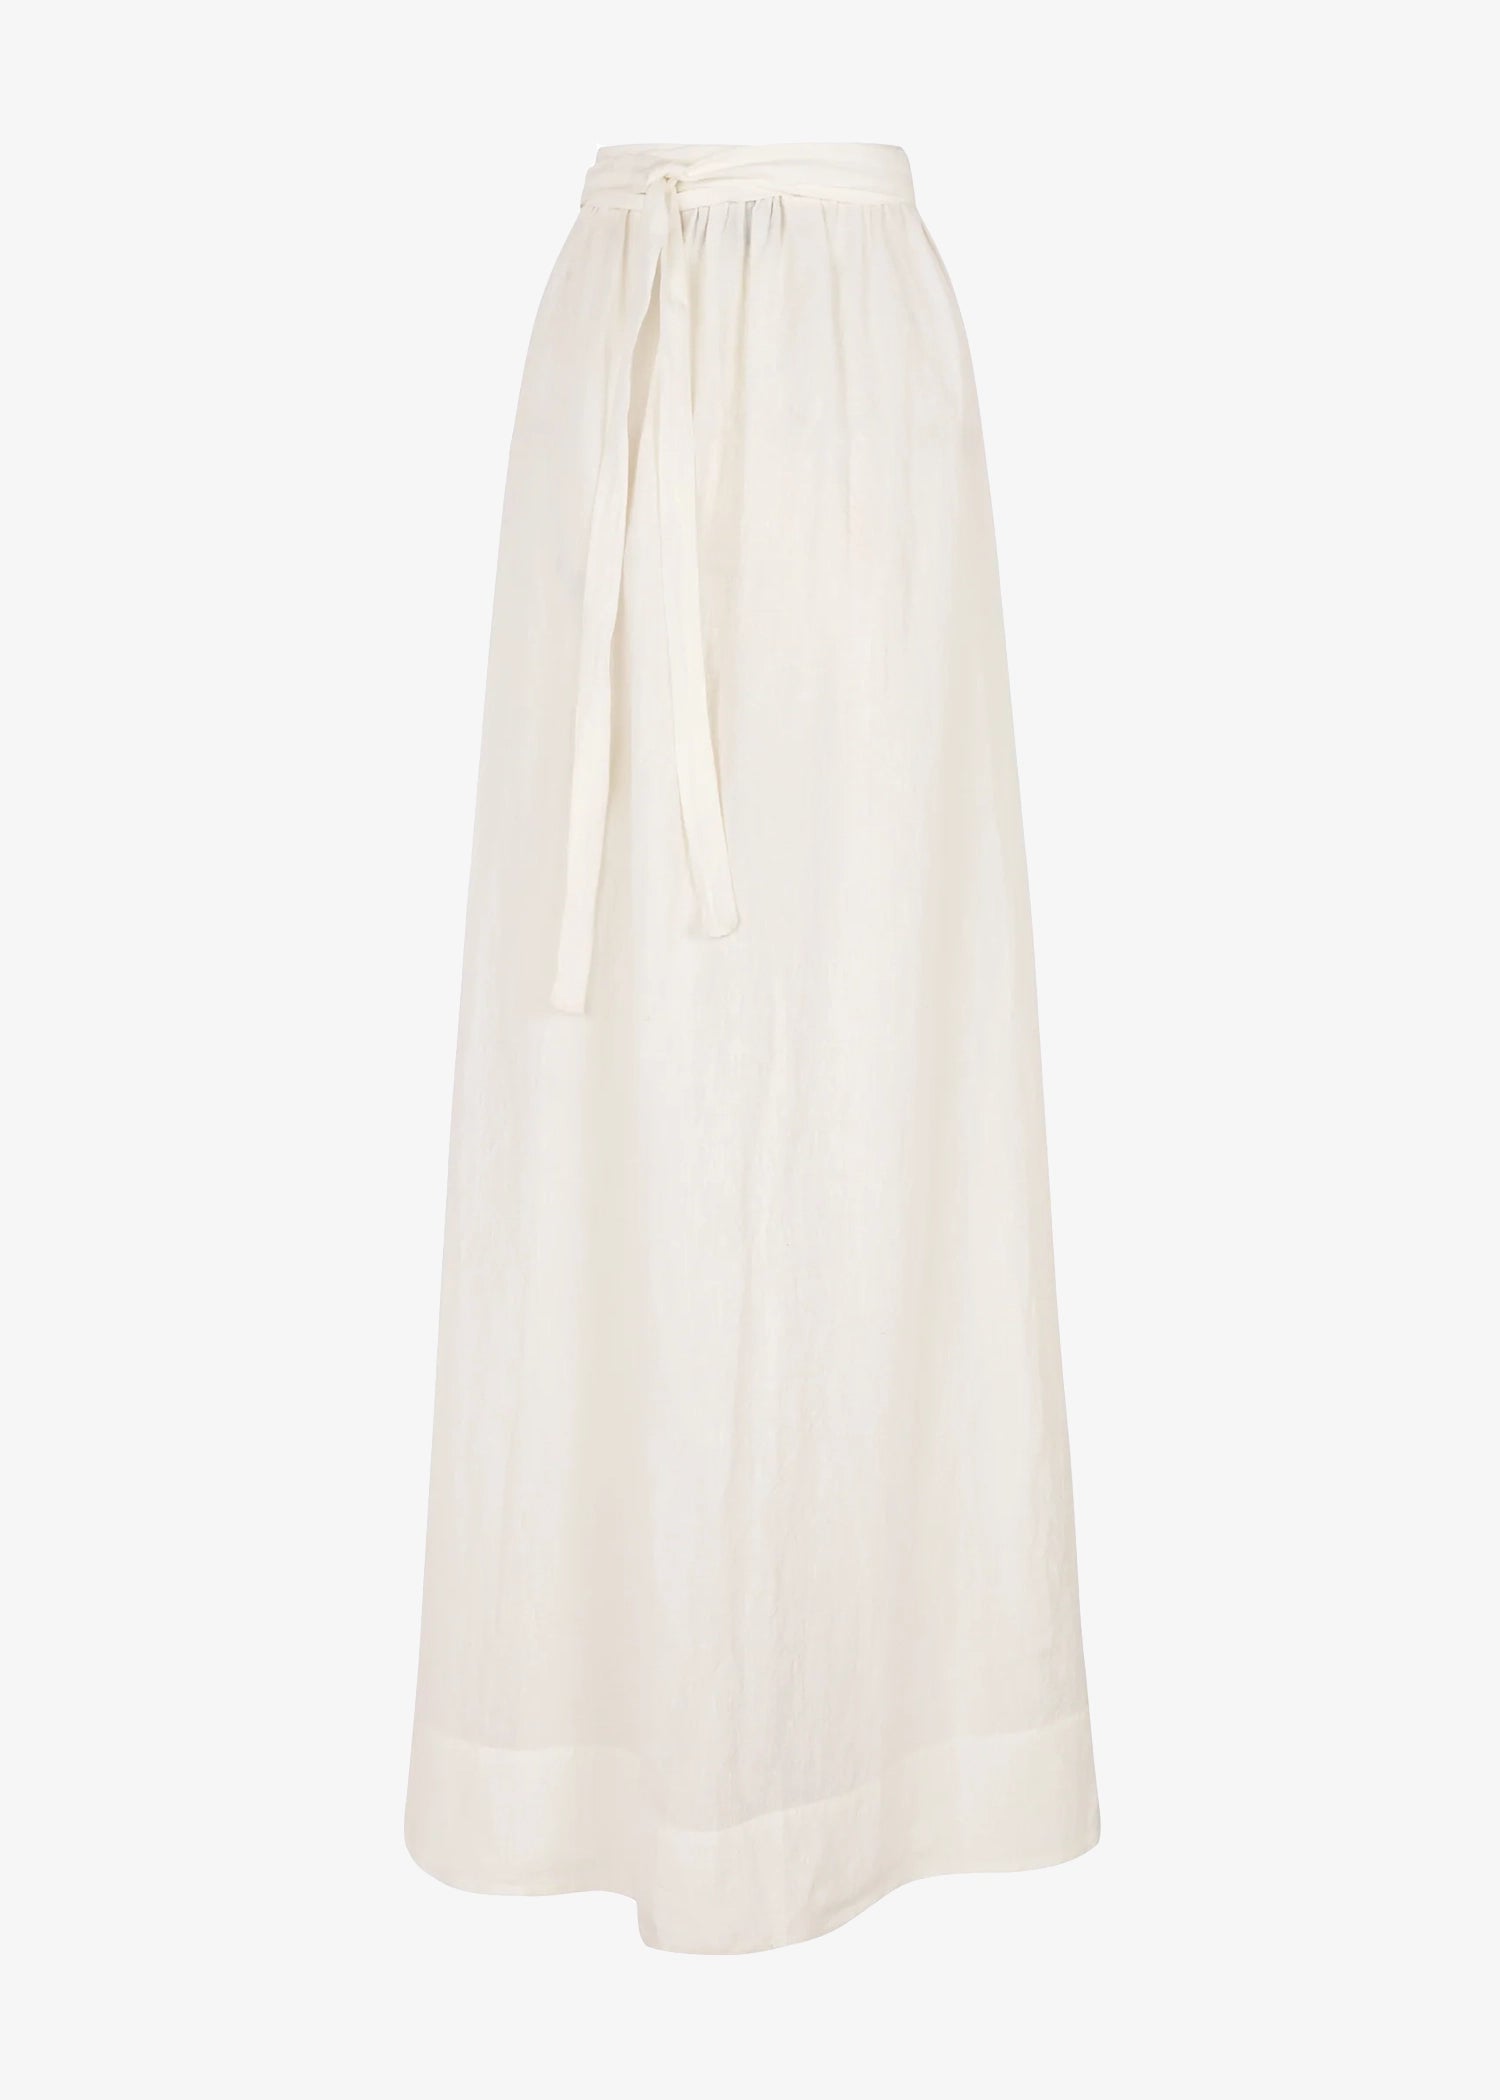 Cortana-Marlo-Ecru-Linen-Skirt